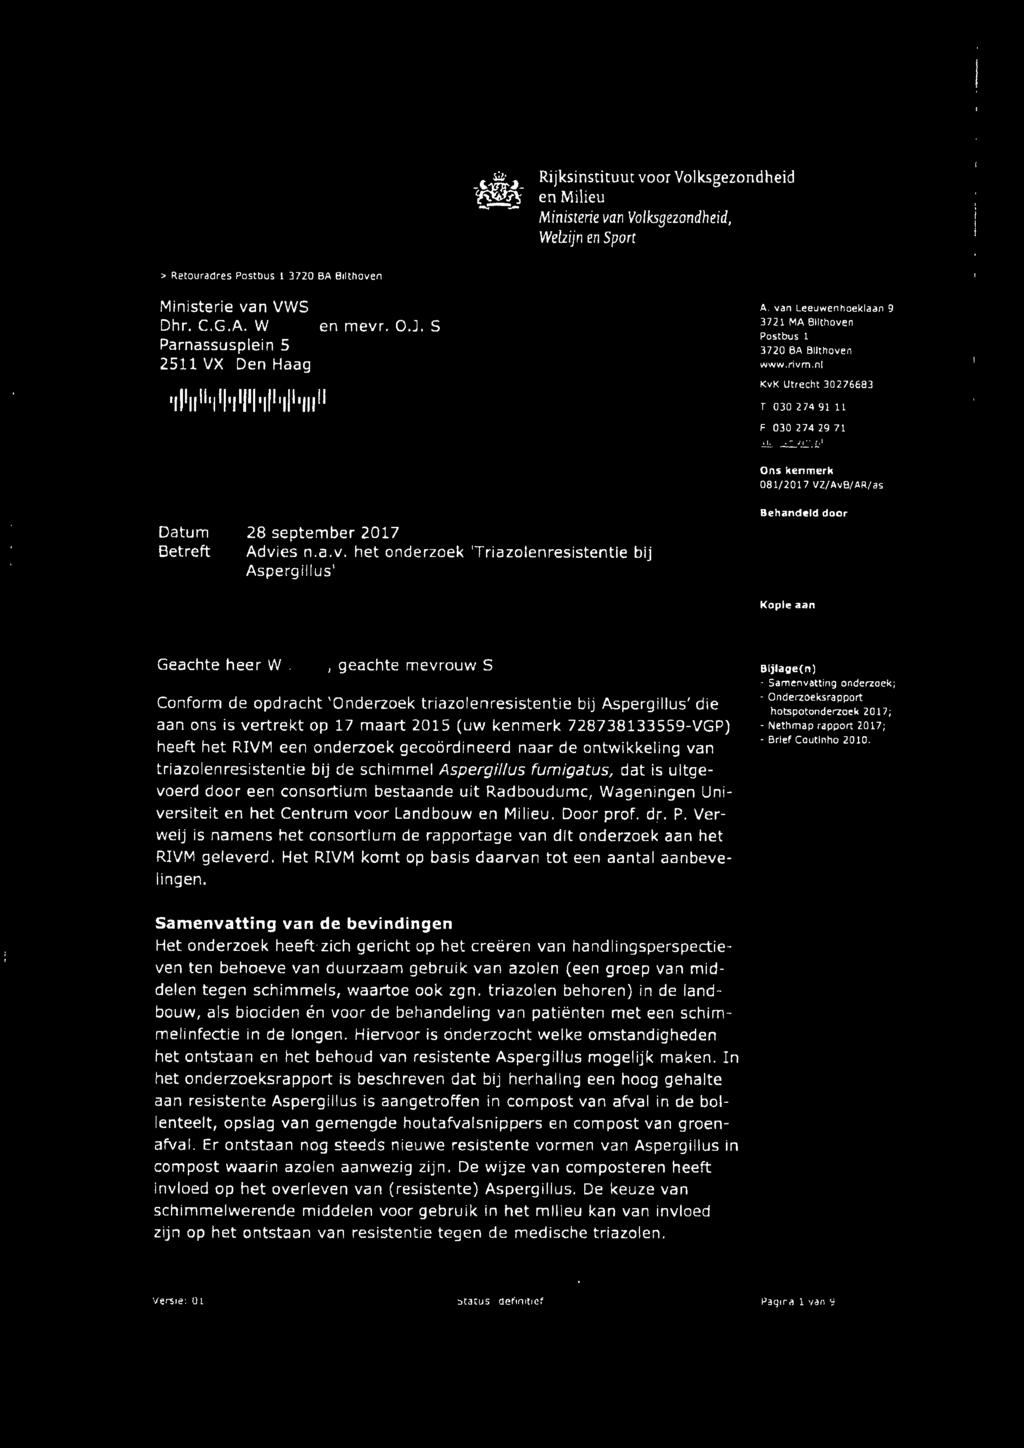 nl KvK Utrecht 30276683 T 030 274 91 l l F 030 274 29 71 081/2017 VZ/AvB/AR/as Betreft 28 september 2017 Advies n.a.v. het onderzoek 'Triazolenresistentle bij Aspergillus' Behandeld door Kopie aan Geachte heer W.